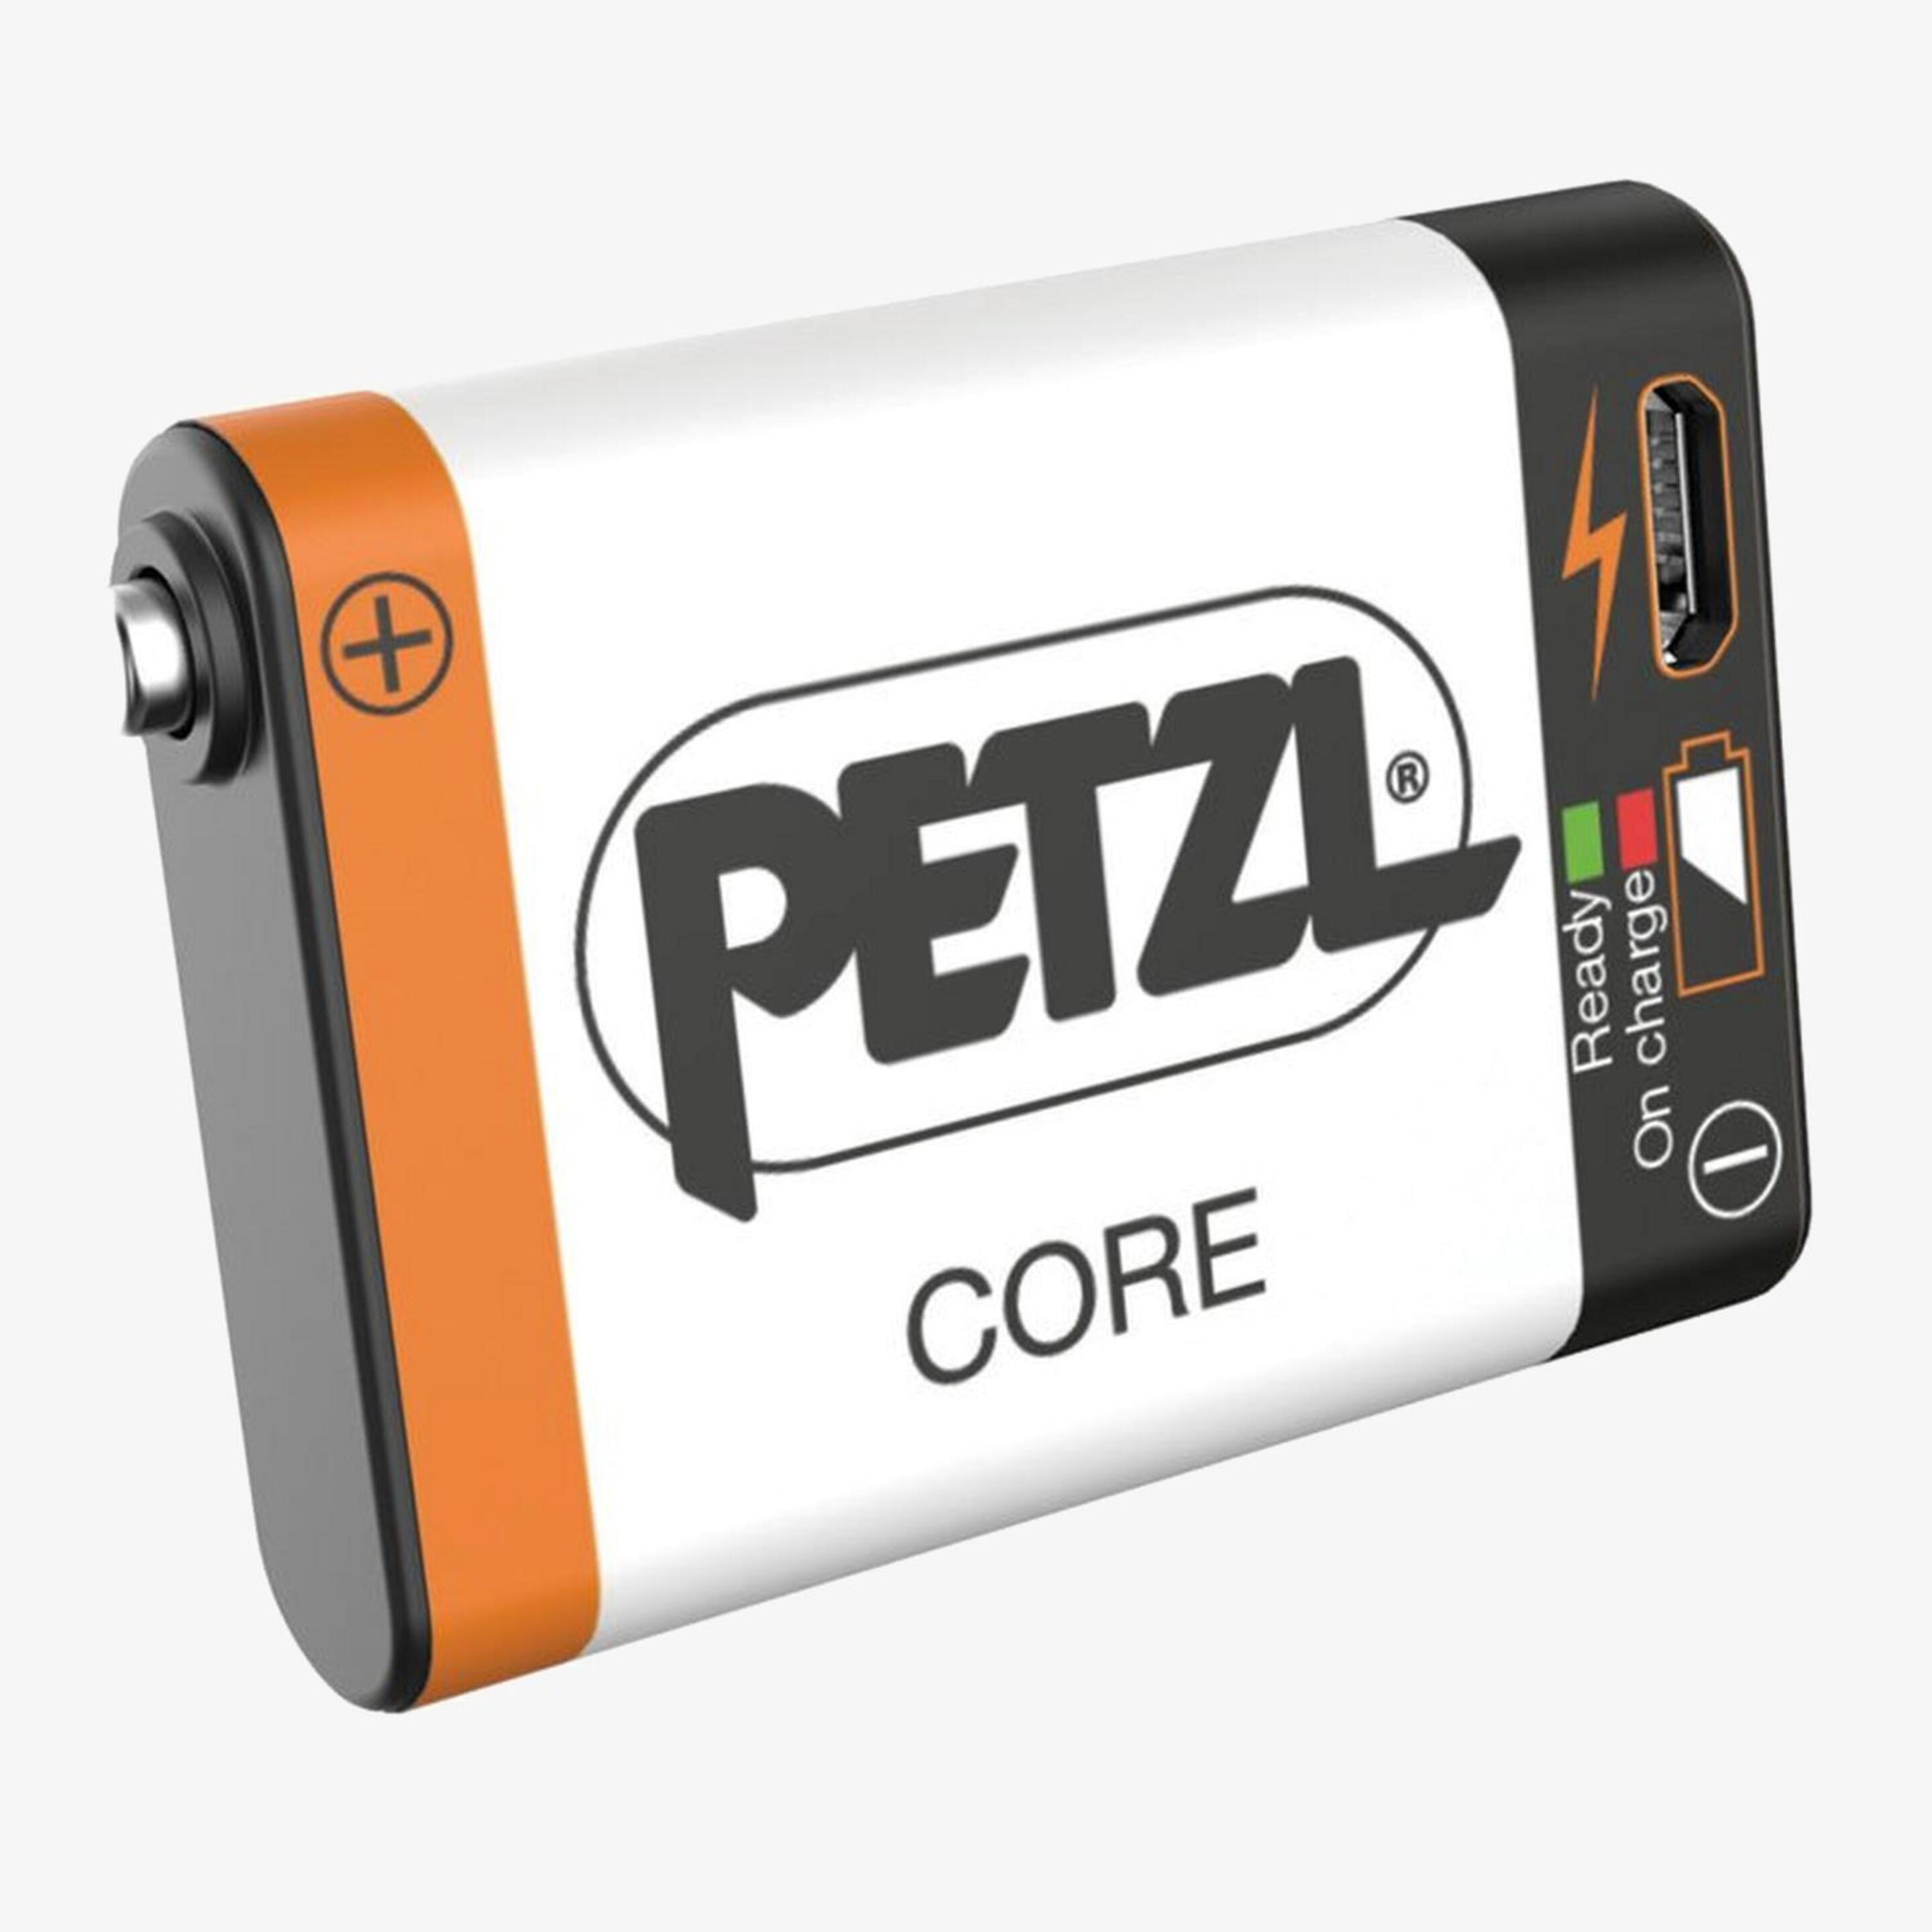 Batería Recargable Petzl